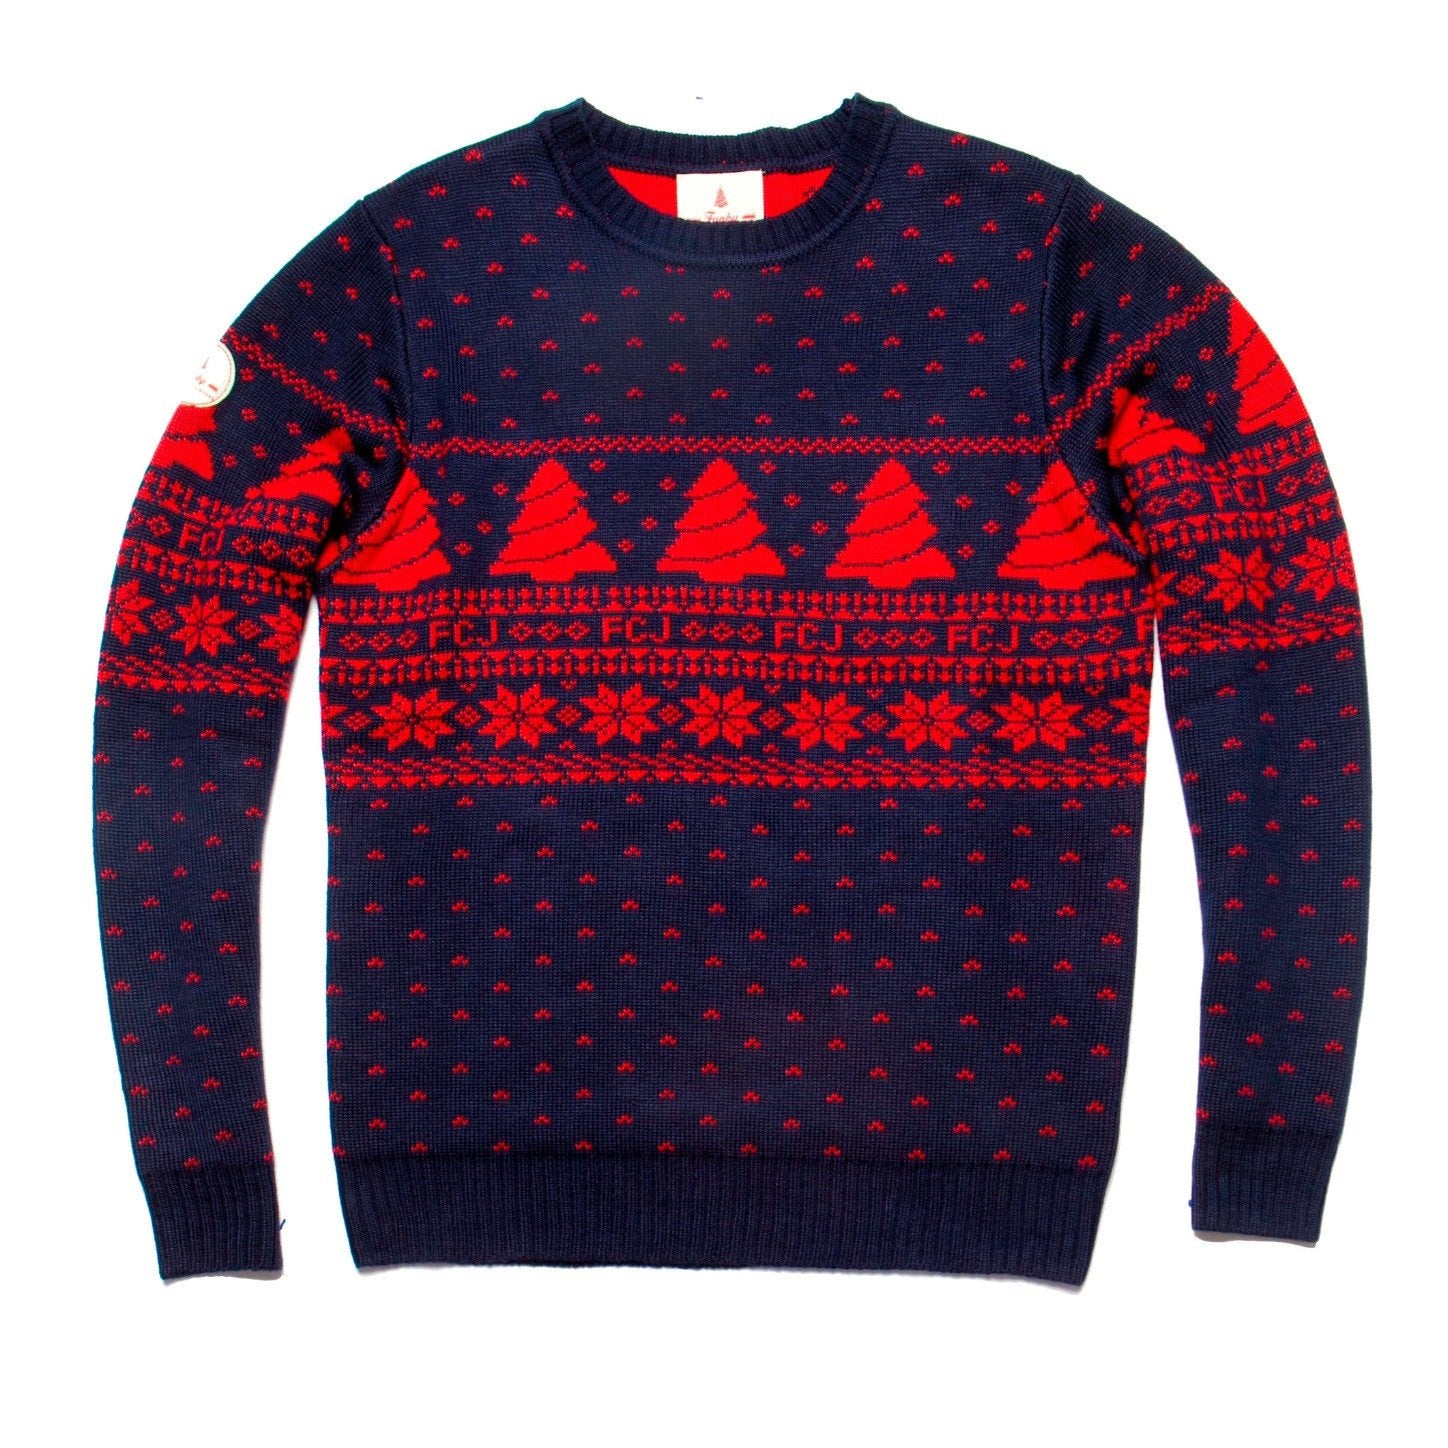 Vintage Style Fair Isle Christmas Sweater